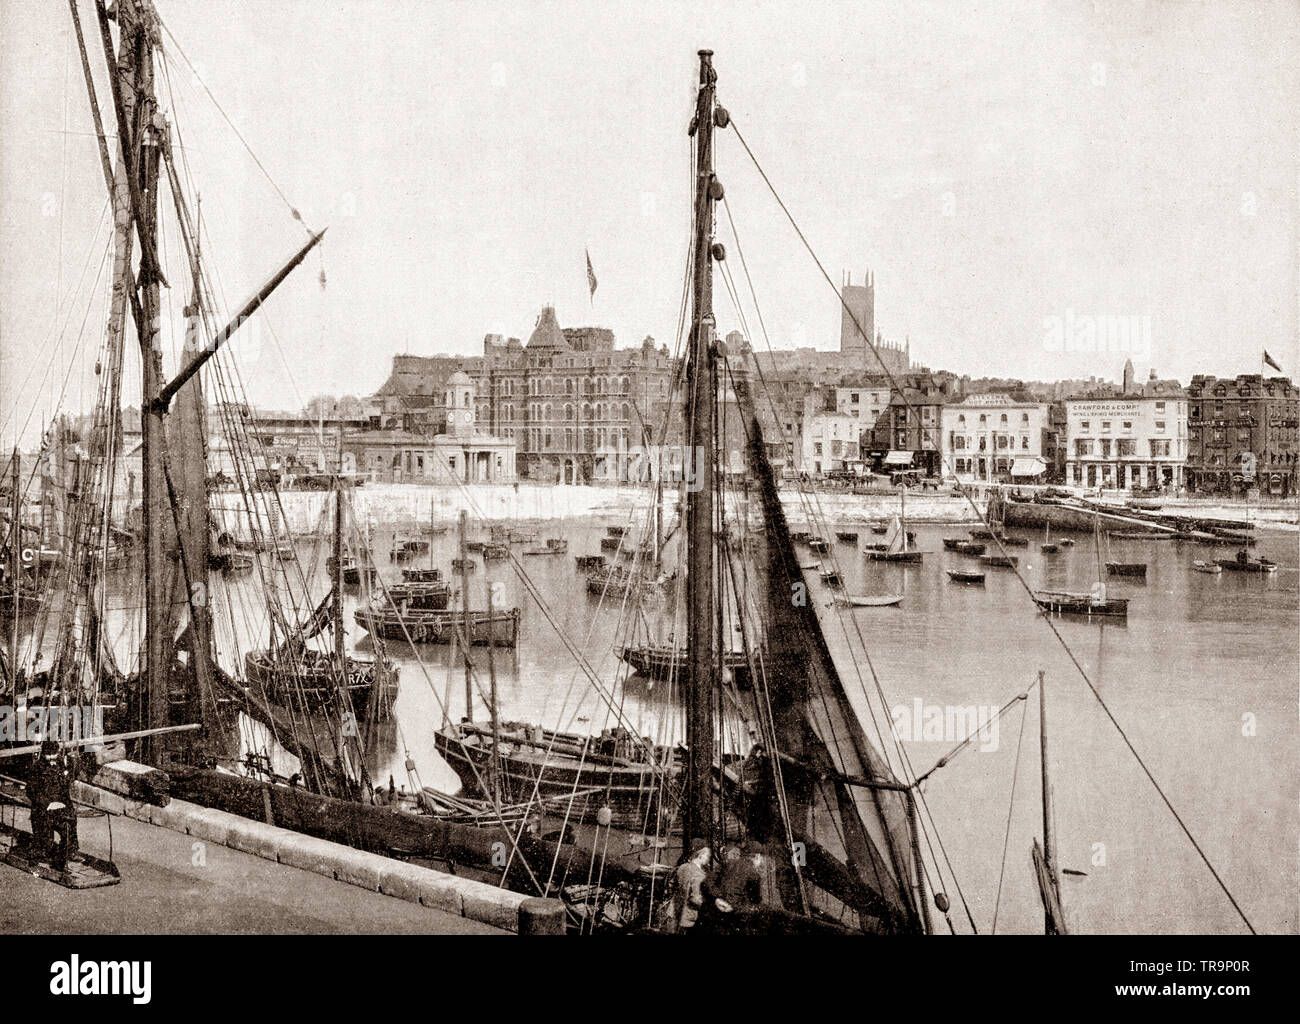 Un 19e siècle voir des bateaux de pêche et yachts dans le port de Margate. Dans une ville balnéaire de Margate, Kent, Thanet dans le sud-est de l'Angleterre a été un premier complexe en bord de mer et d'une destination de vacances traditionnelles pour les Londoniens appelée sur ses plages de sable, pendant au moins 250 ans. Banque D'Images